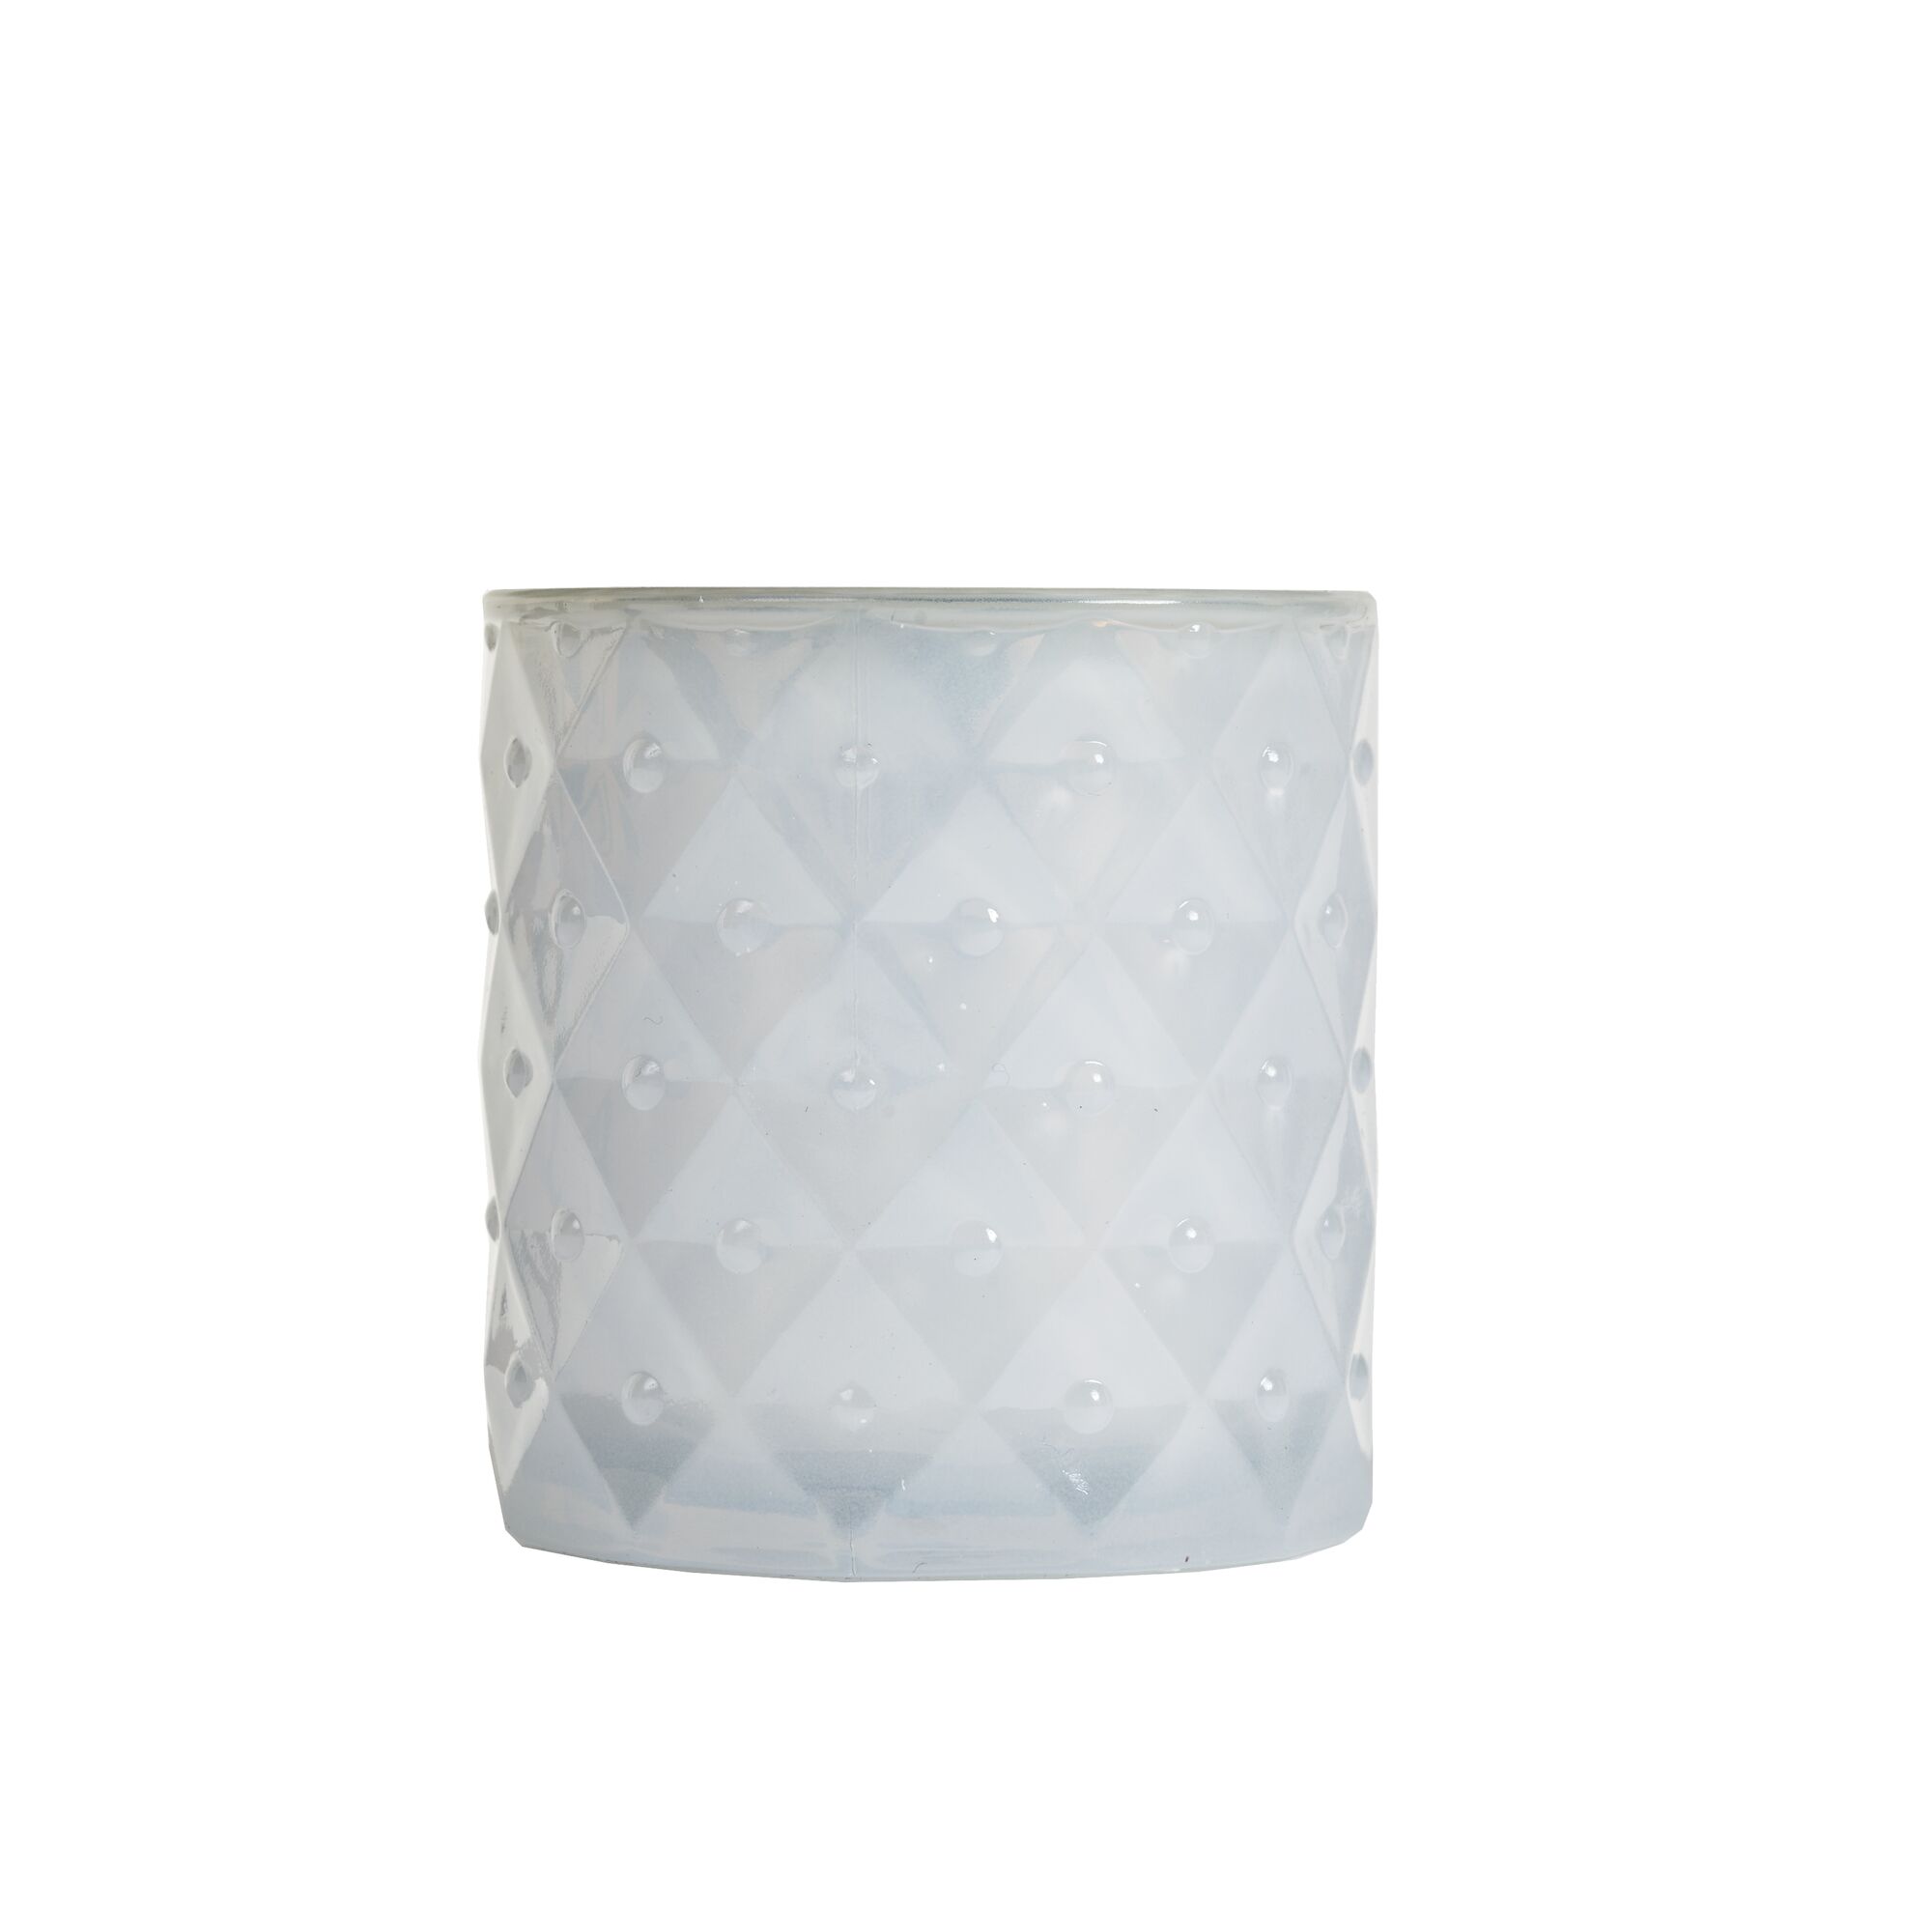 SPAAS Geruchlose Kerze im Weißes strukturierten Glas, ± 25 Stunden - Weiß